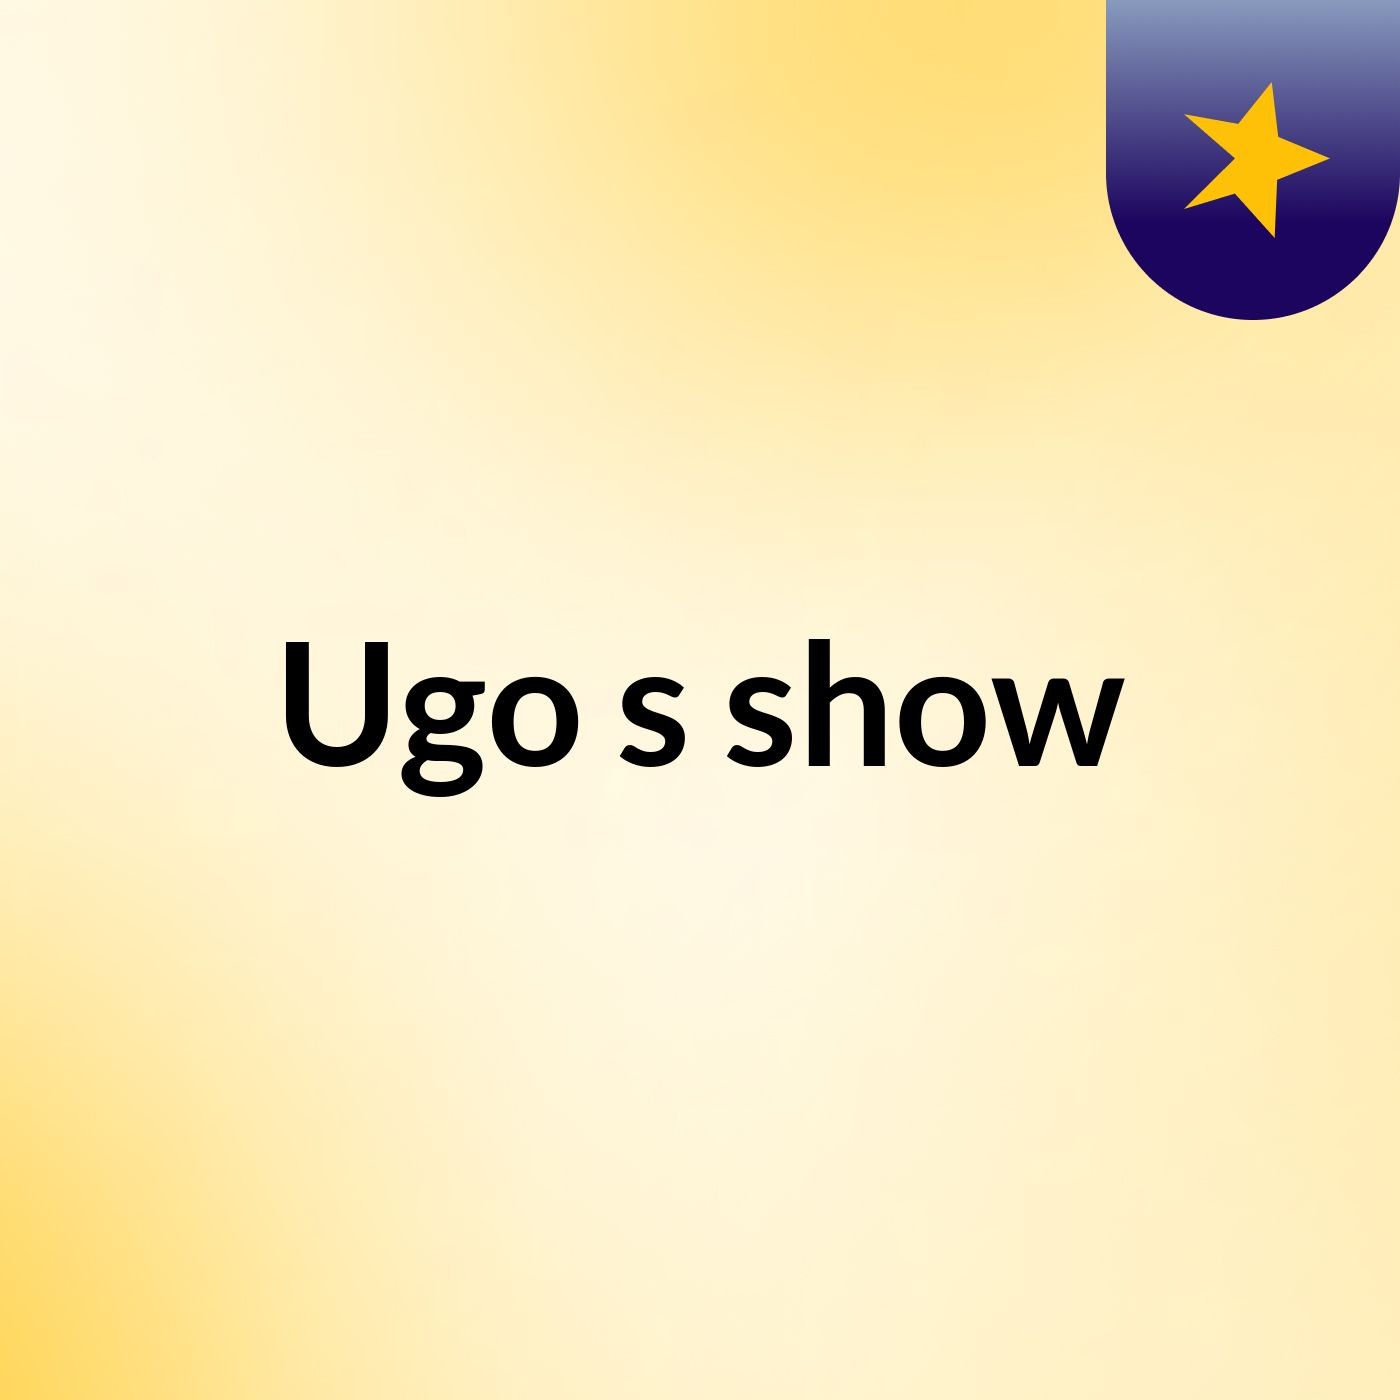 Ugo's show